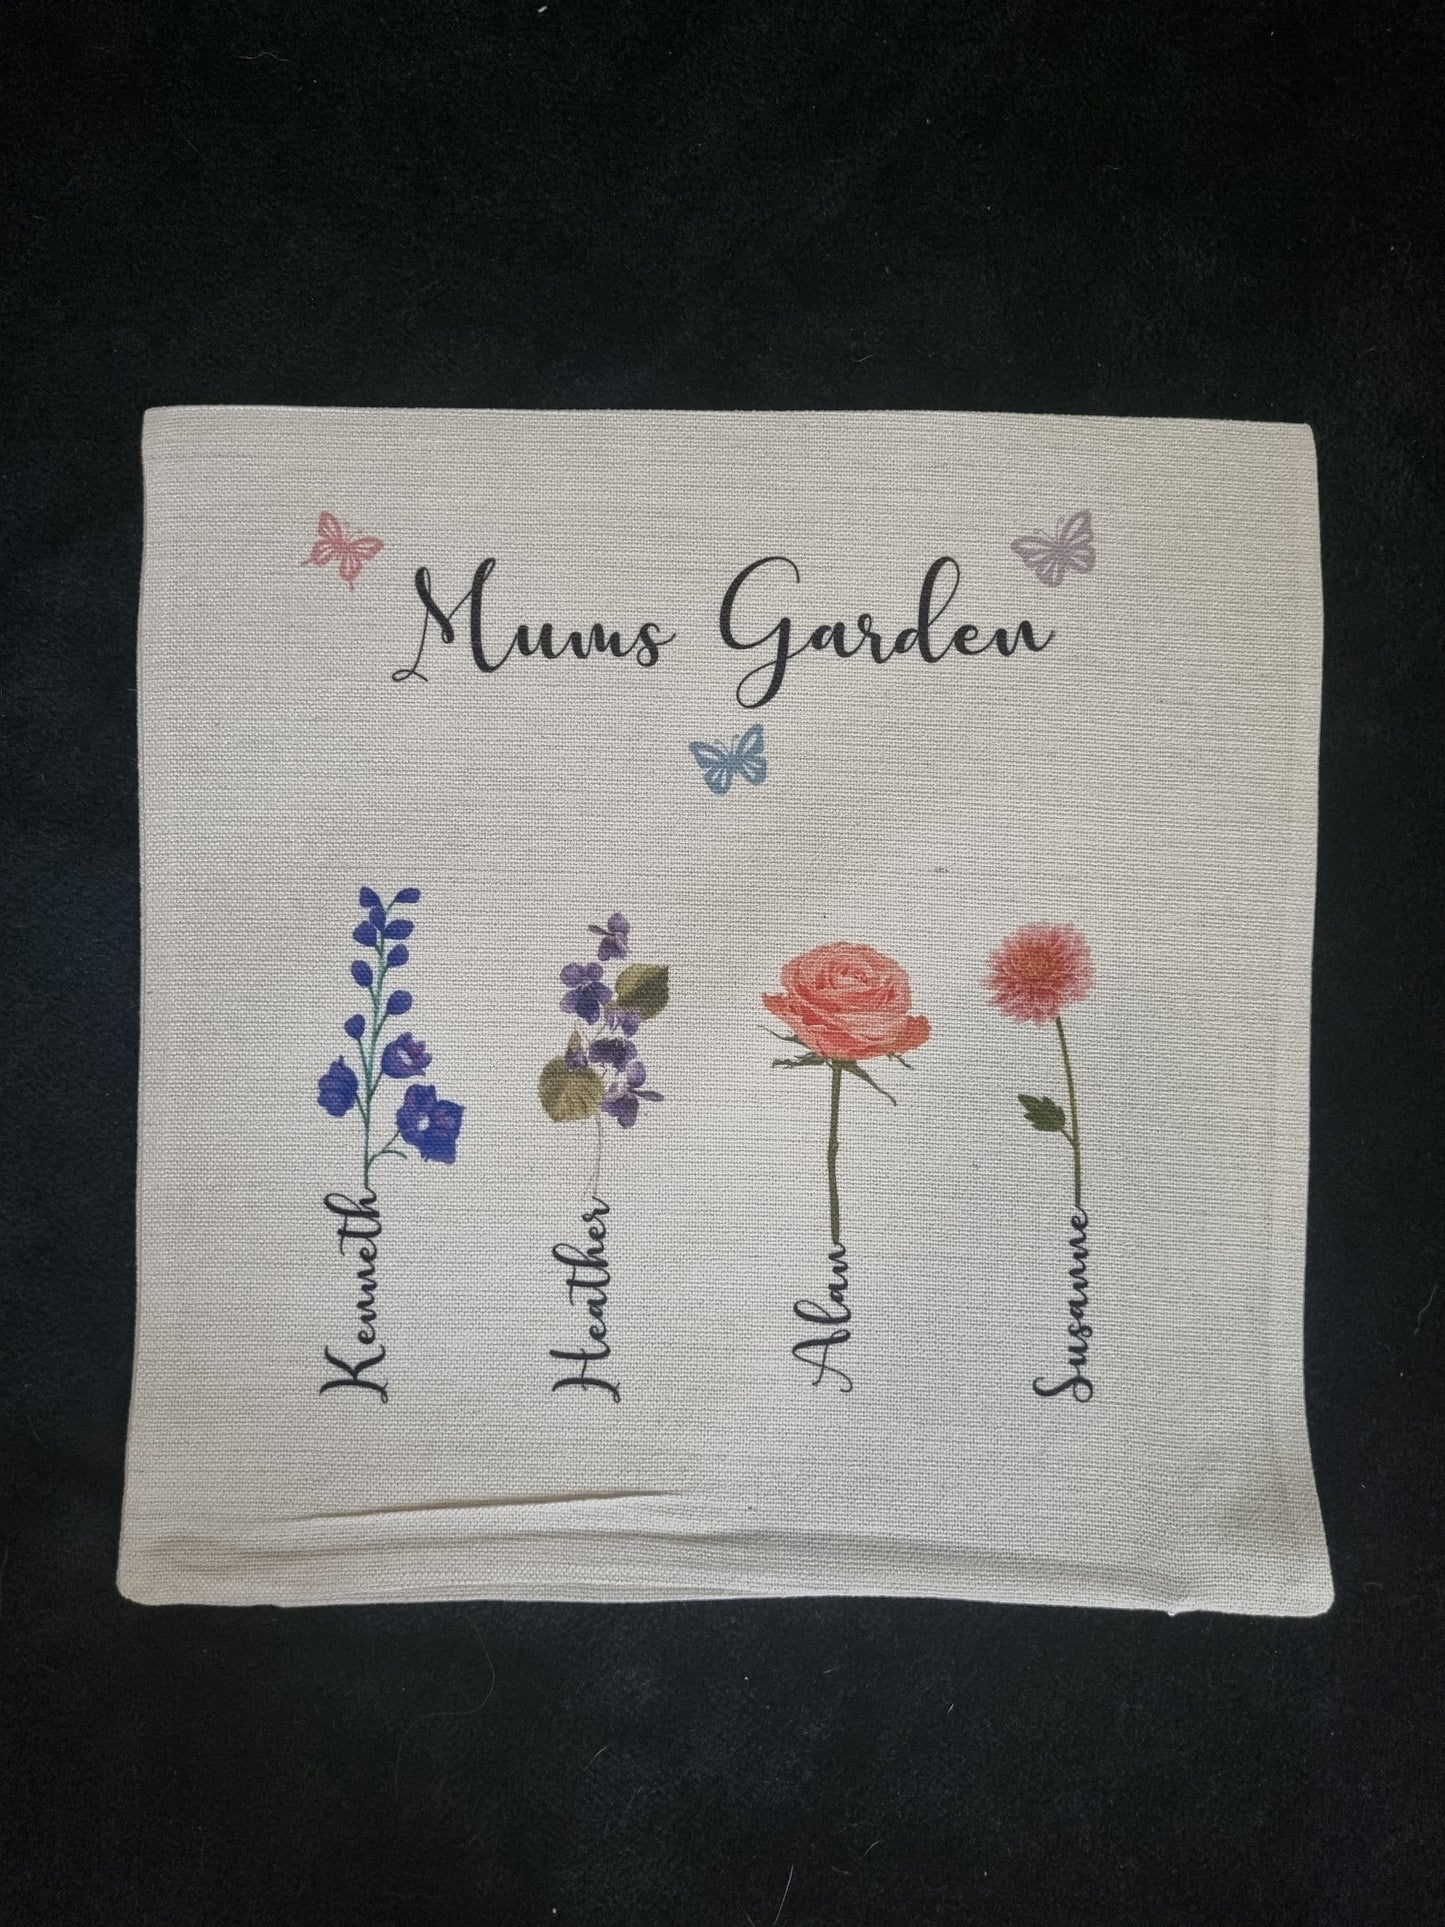 Birth Month Flower Garden cushion cover